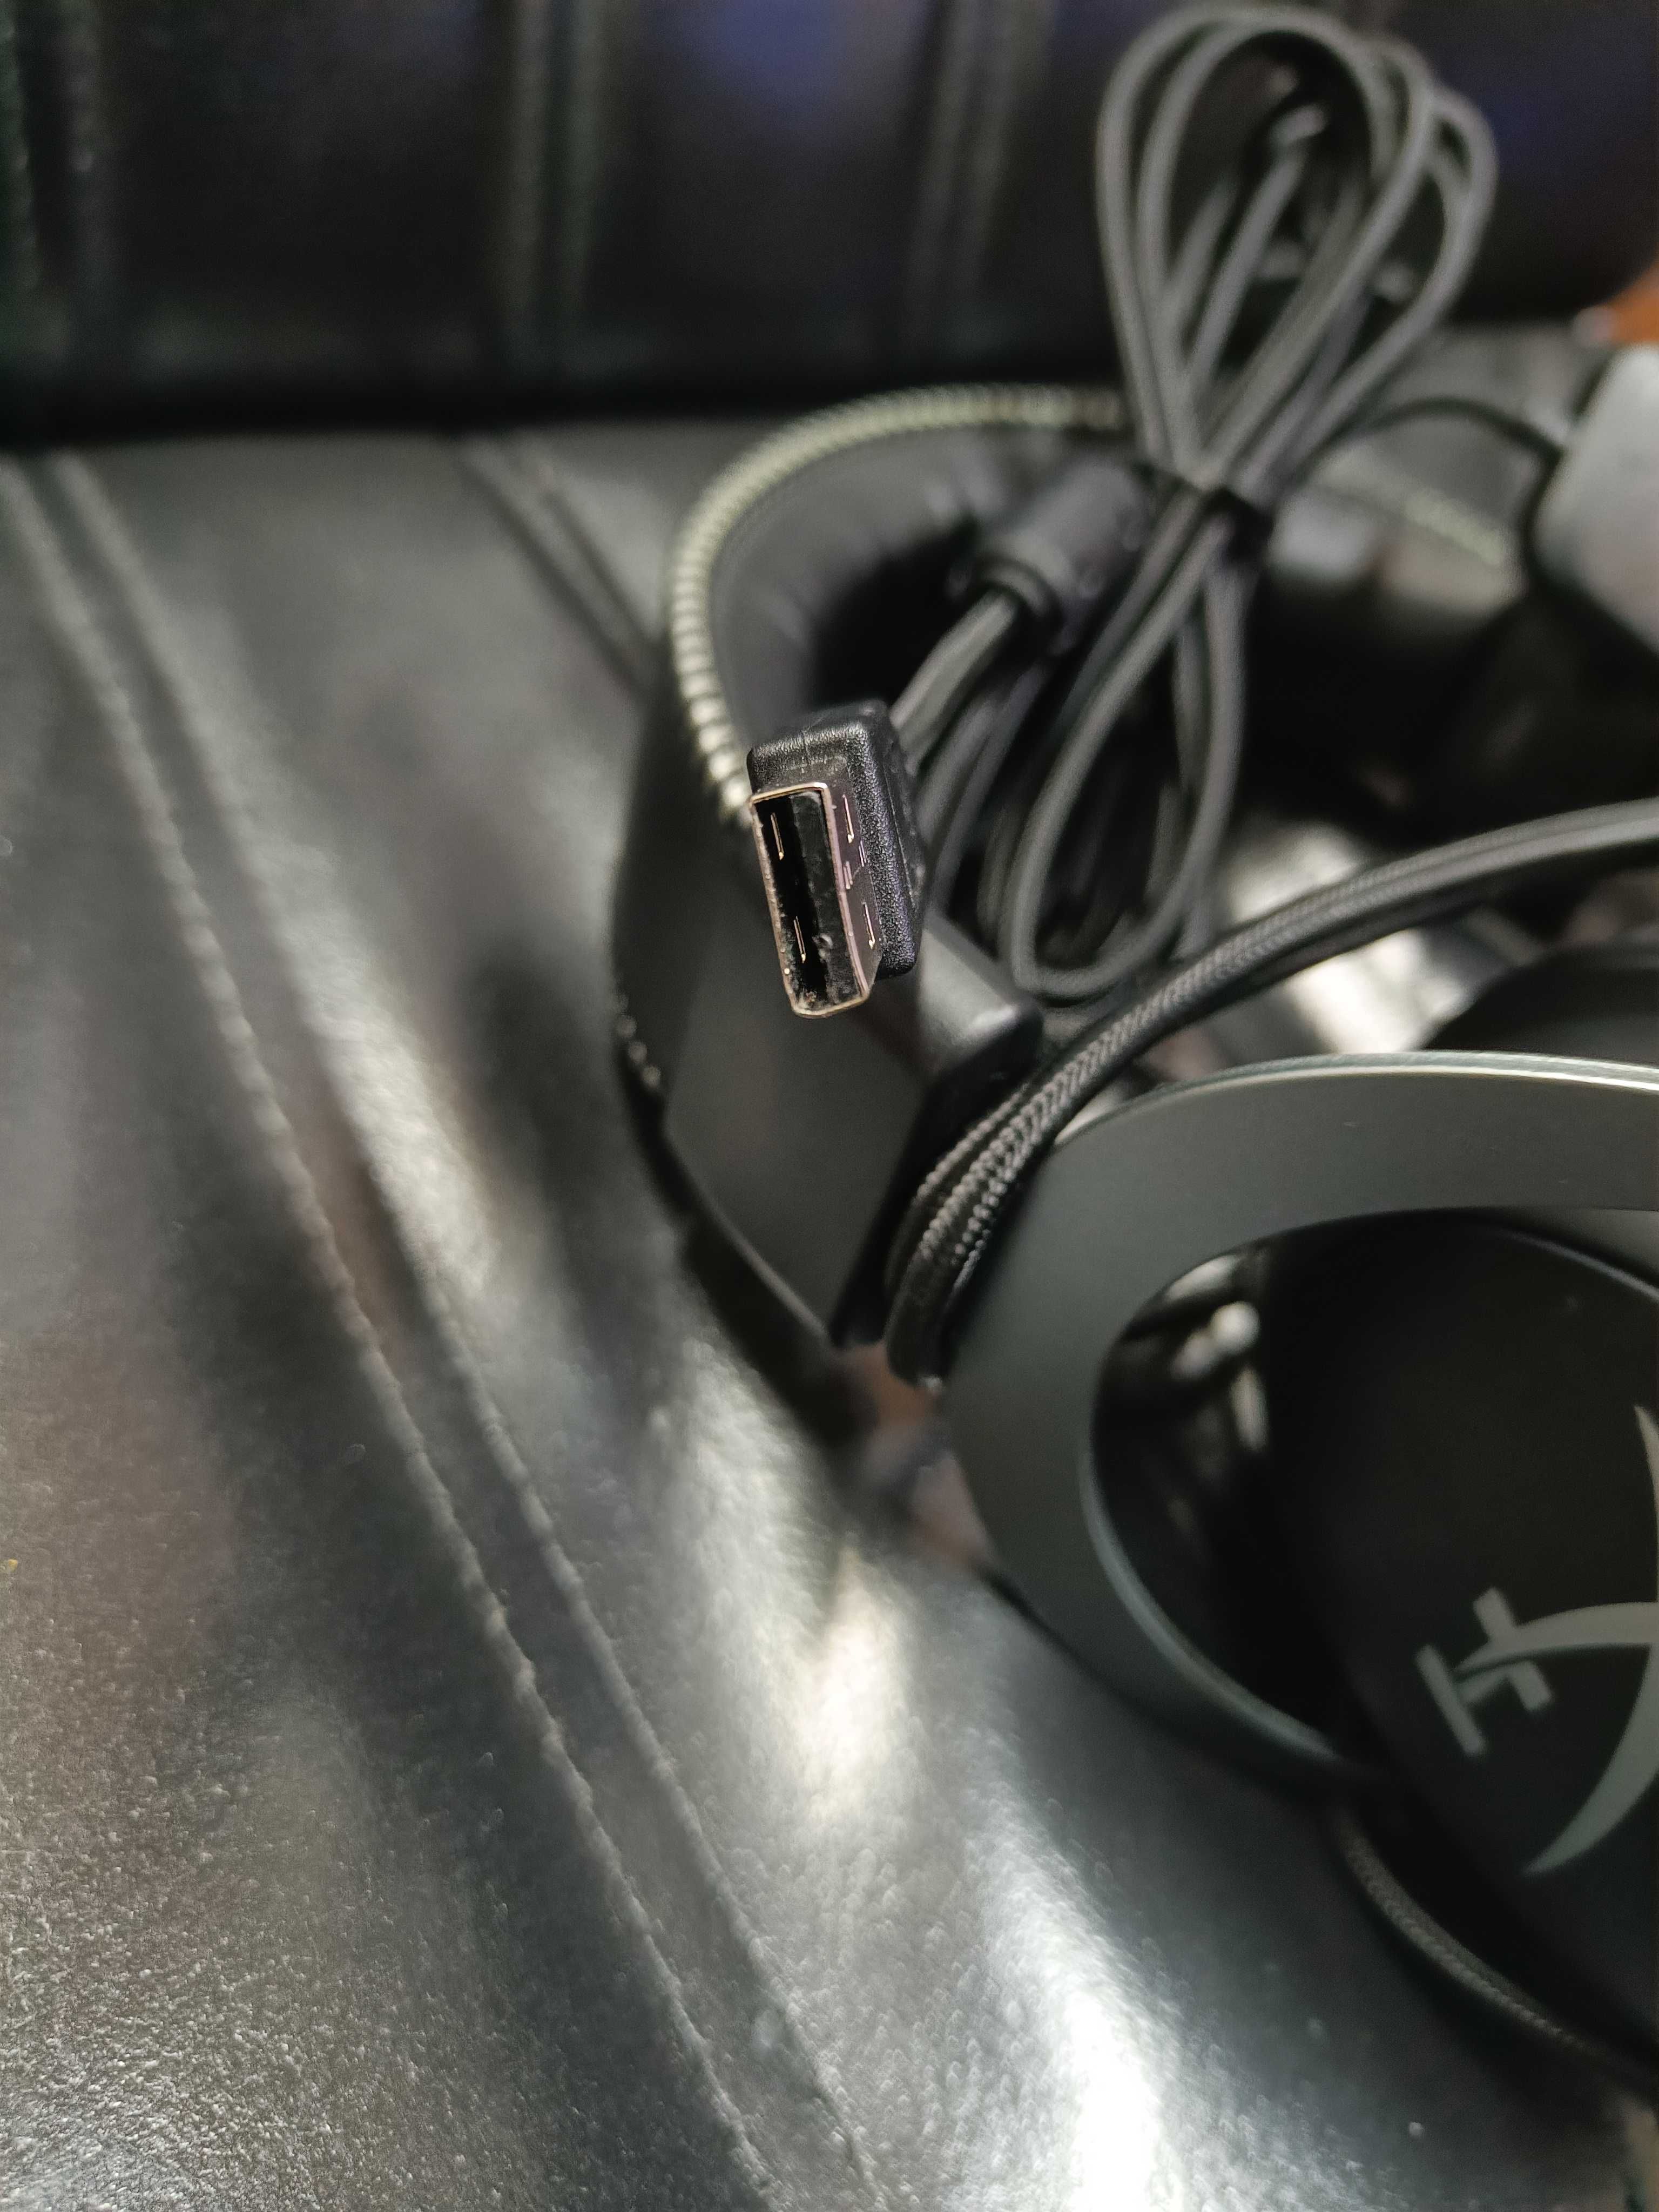 Słuchawki nauszne HyperX CLOUD II 7.1 Surround System czarne